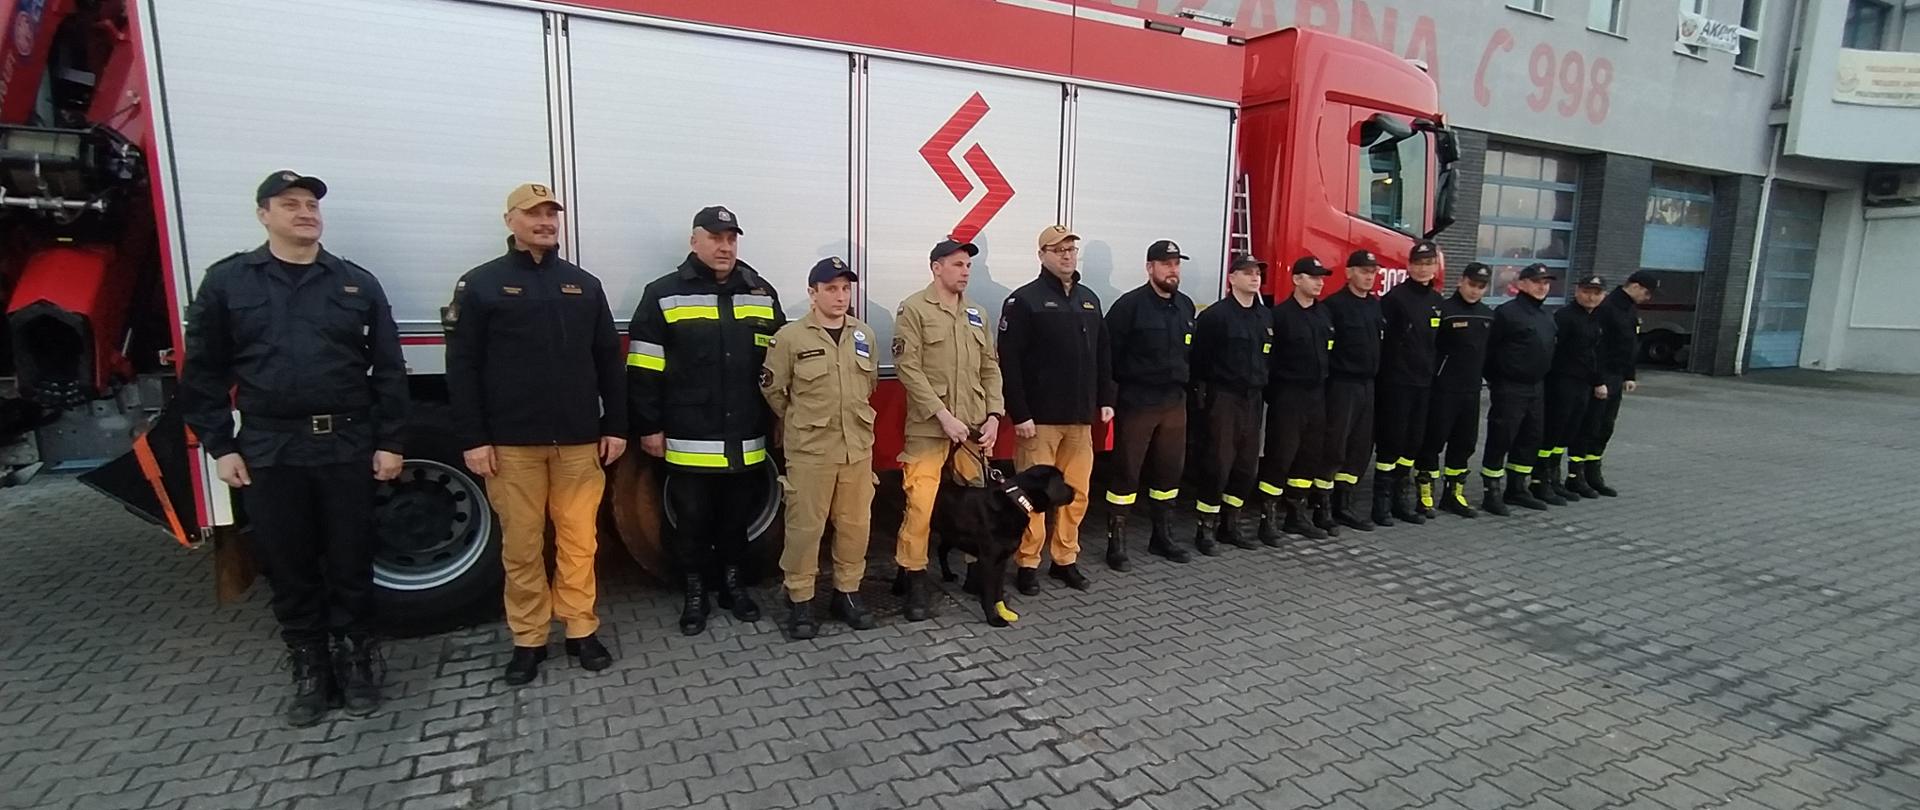 Przywitanie strażaków po misji w Turcji 